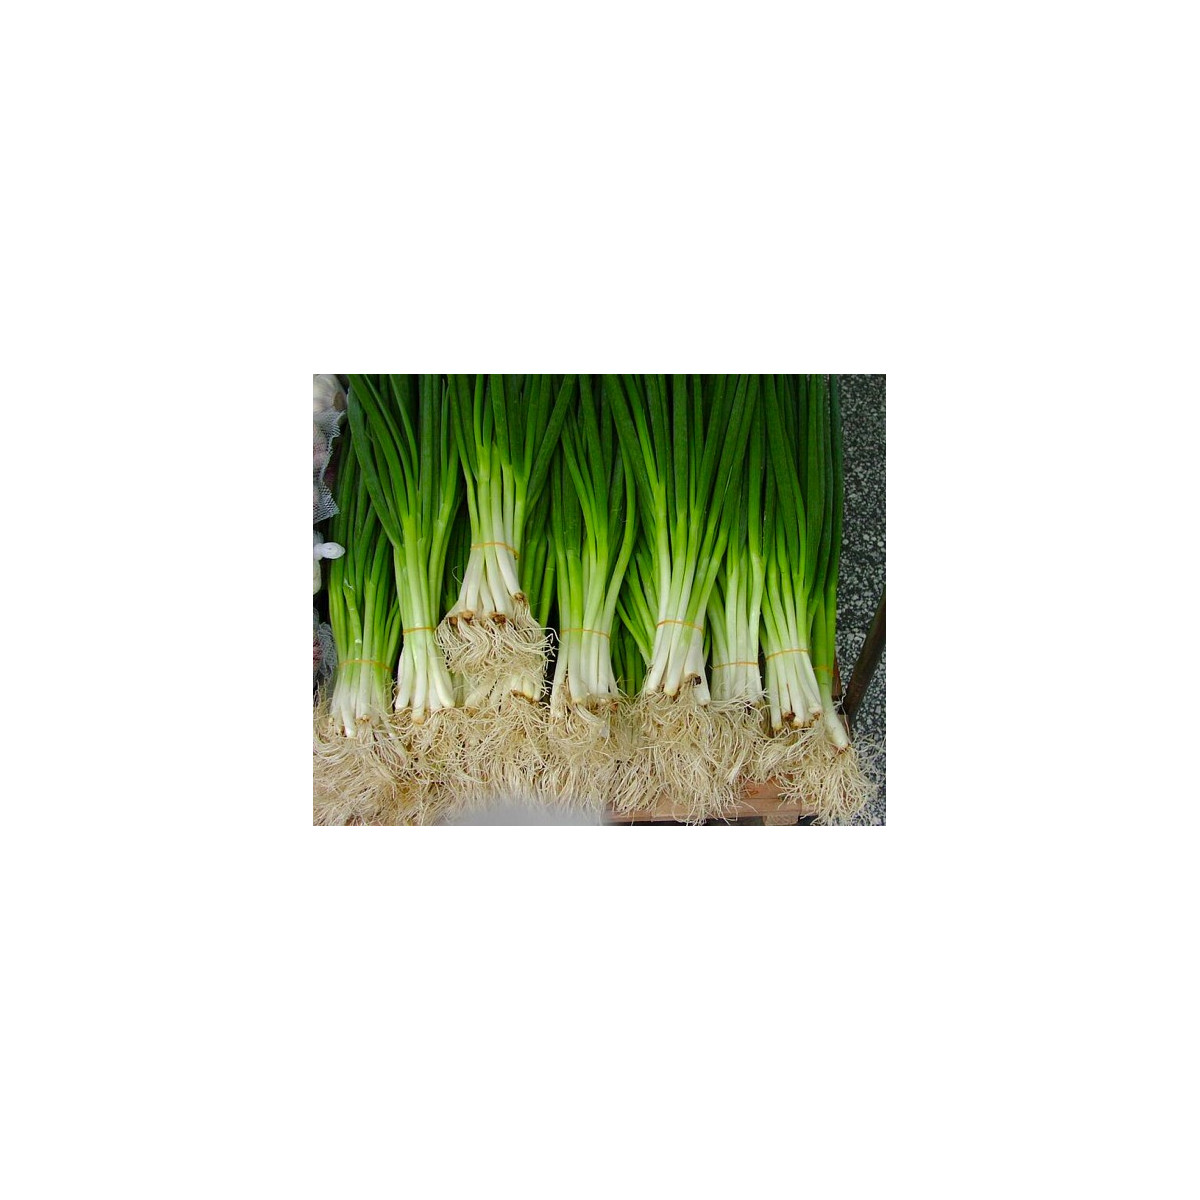 Cibule sečka - Allium fistulosum L. - semena - 1 g